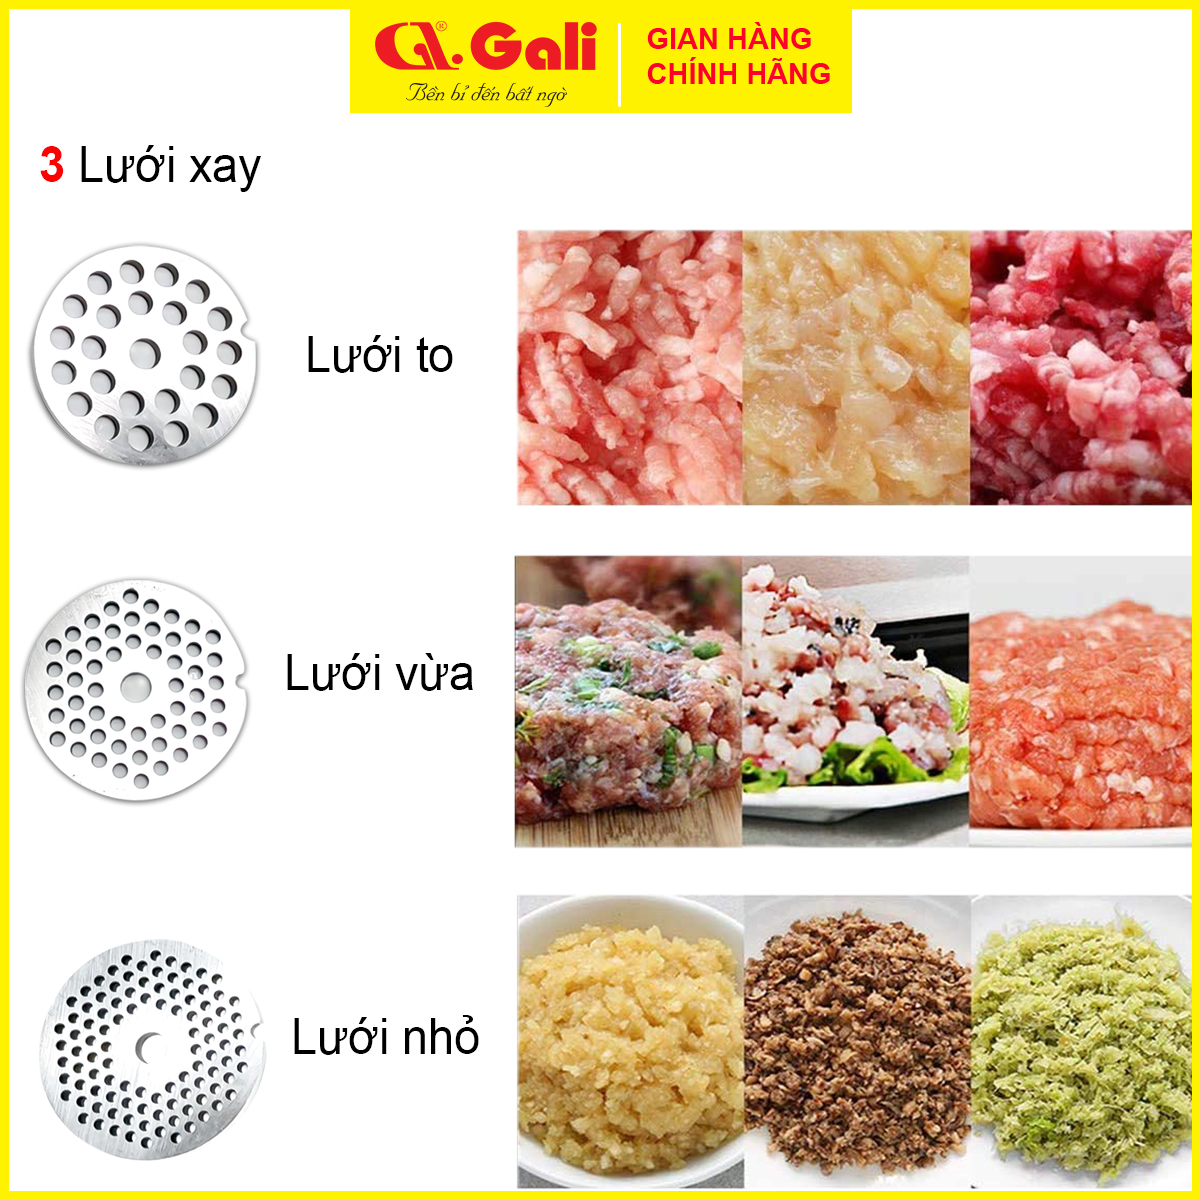 Máy xay thịt công nghiệp chuyên dùng cho nhà hàng, điểm kinh doanh, xay thực phẩm, hàng chính hãng 100%, bảo hành 12 tháng chính hãng Gali